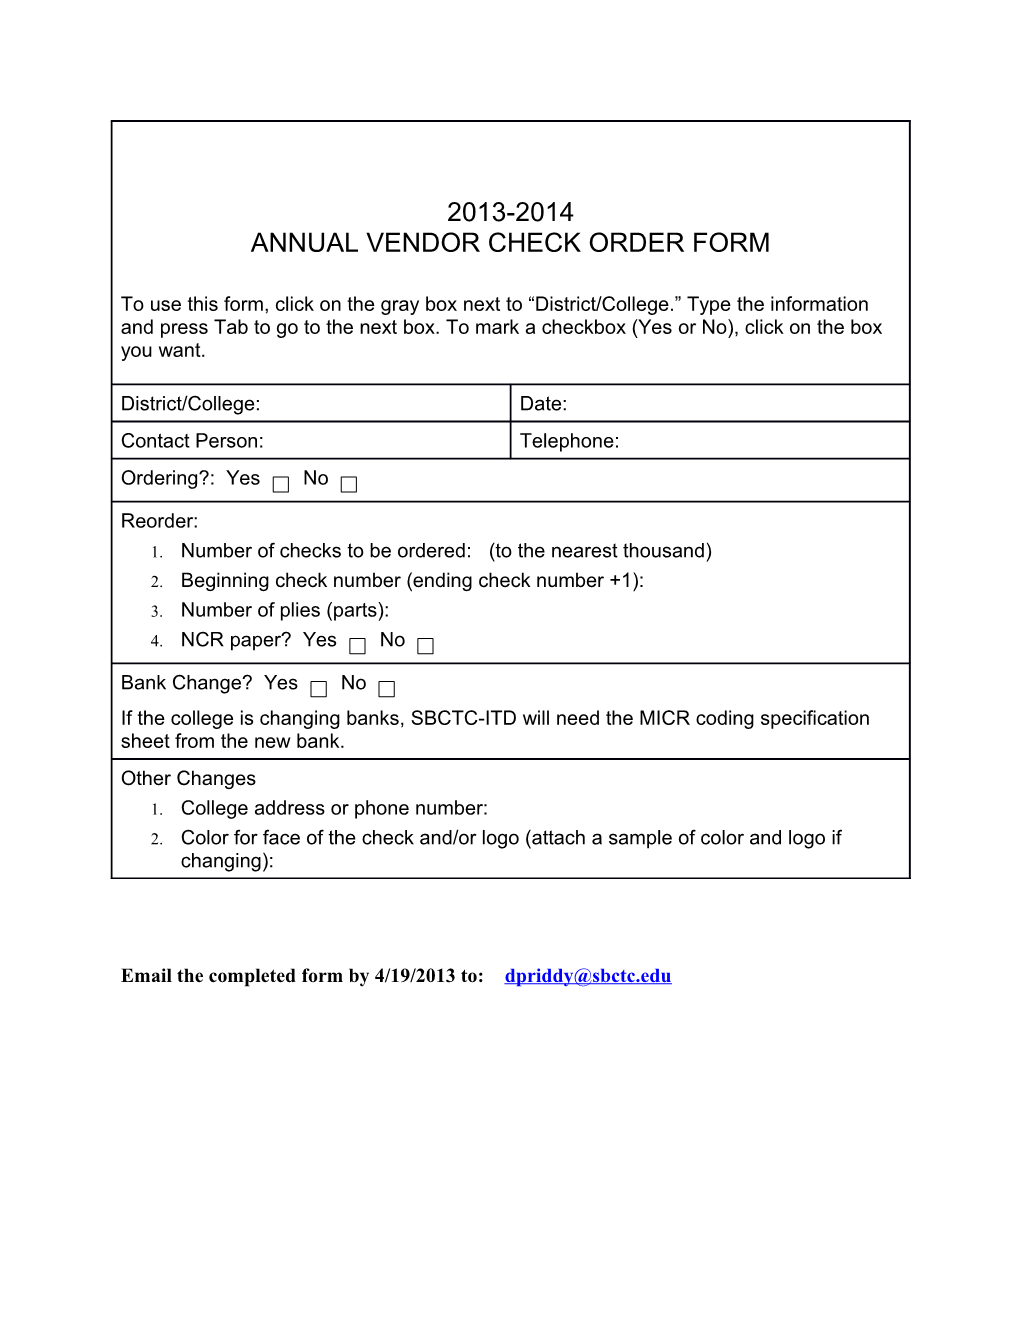 Annual Vendor Check Order Form 1314